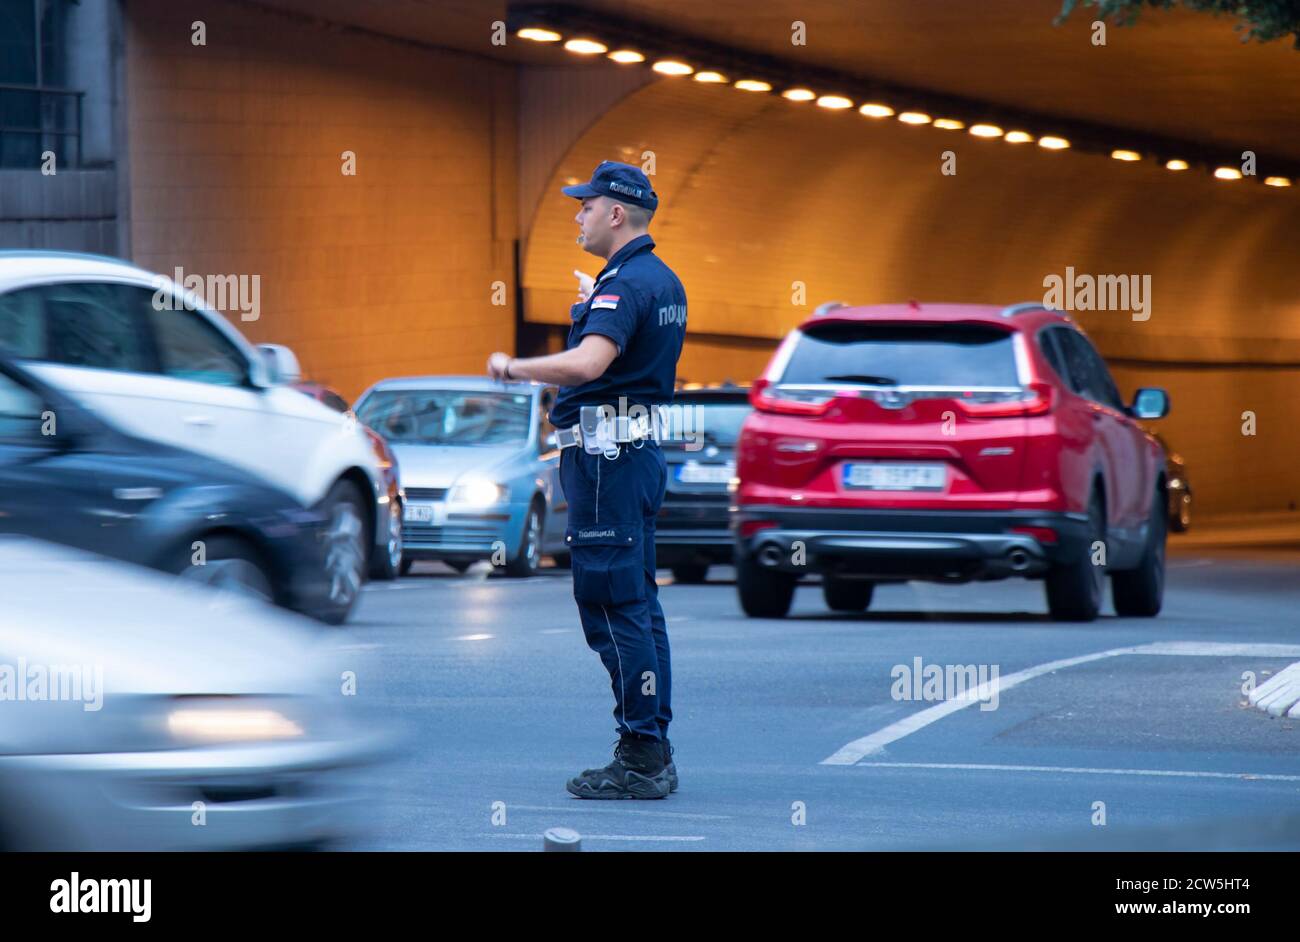 Belgrad, Serbien - 25. September 2020: Polizist im Dienst, steht in der Kreuzung mit Verkehr in Bewegung Unschärfe Stockfoto